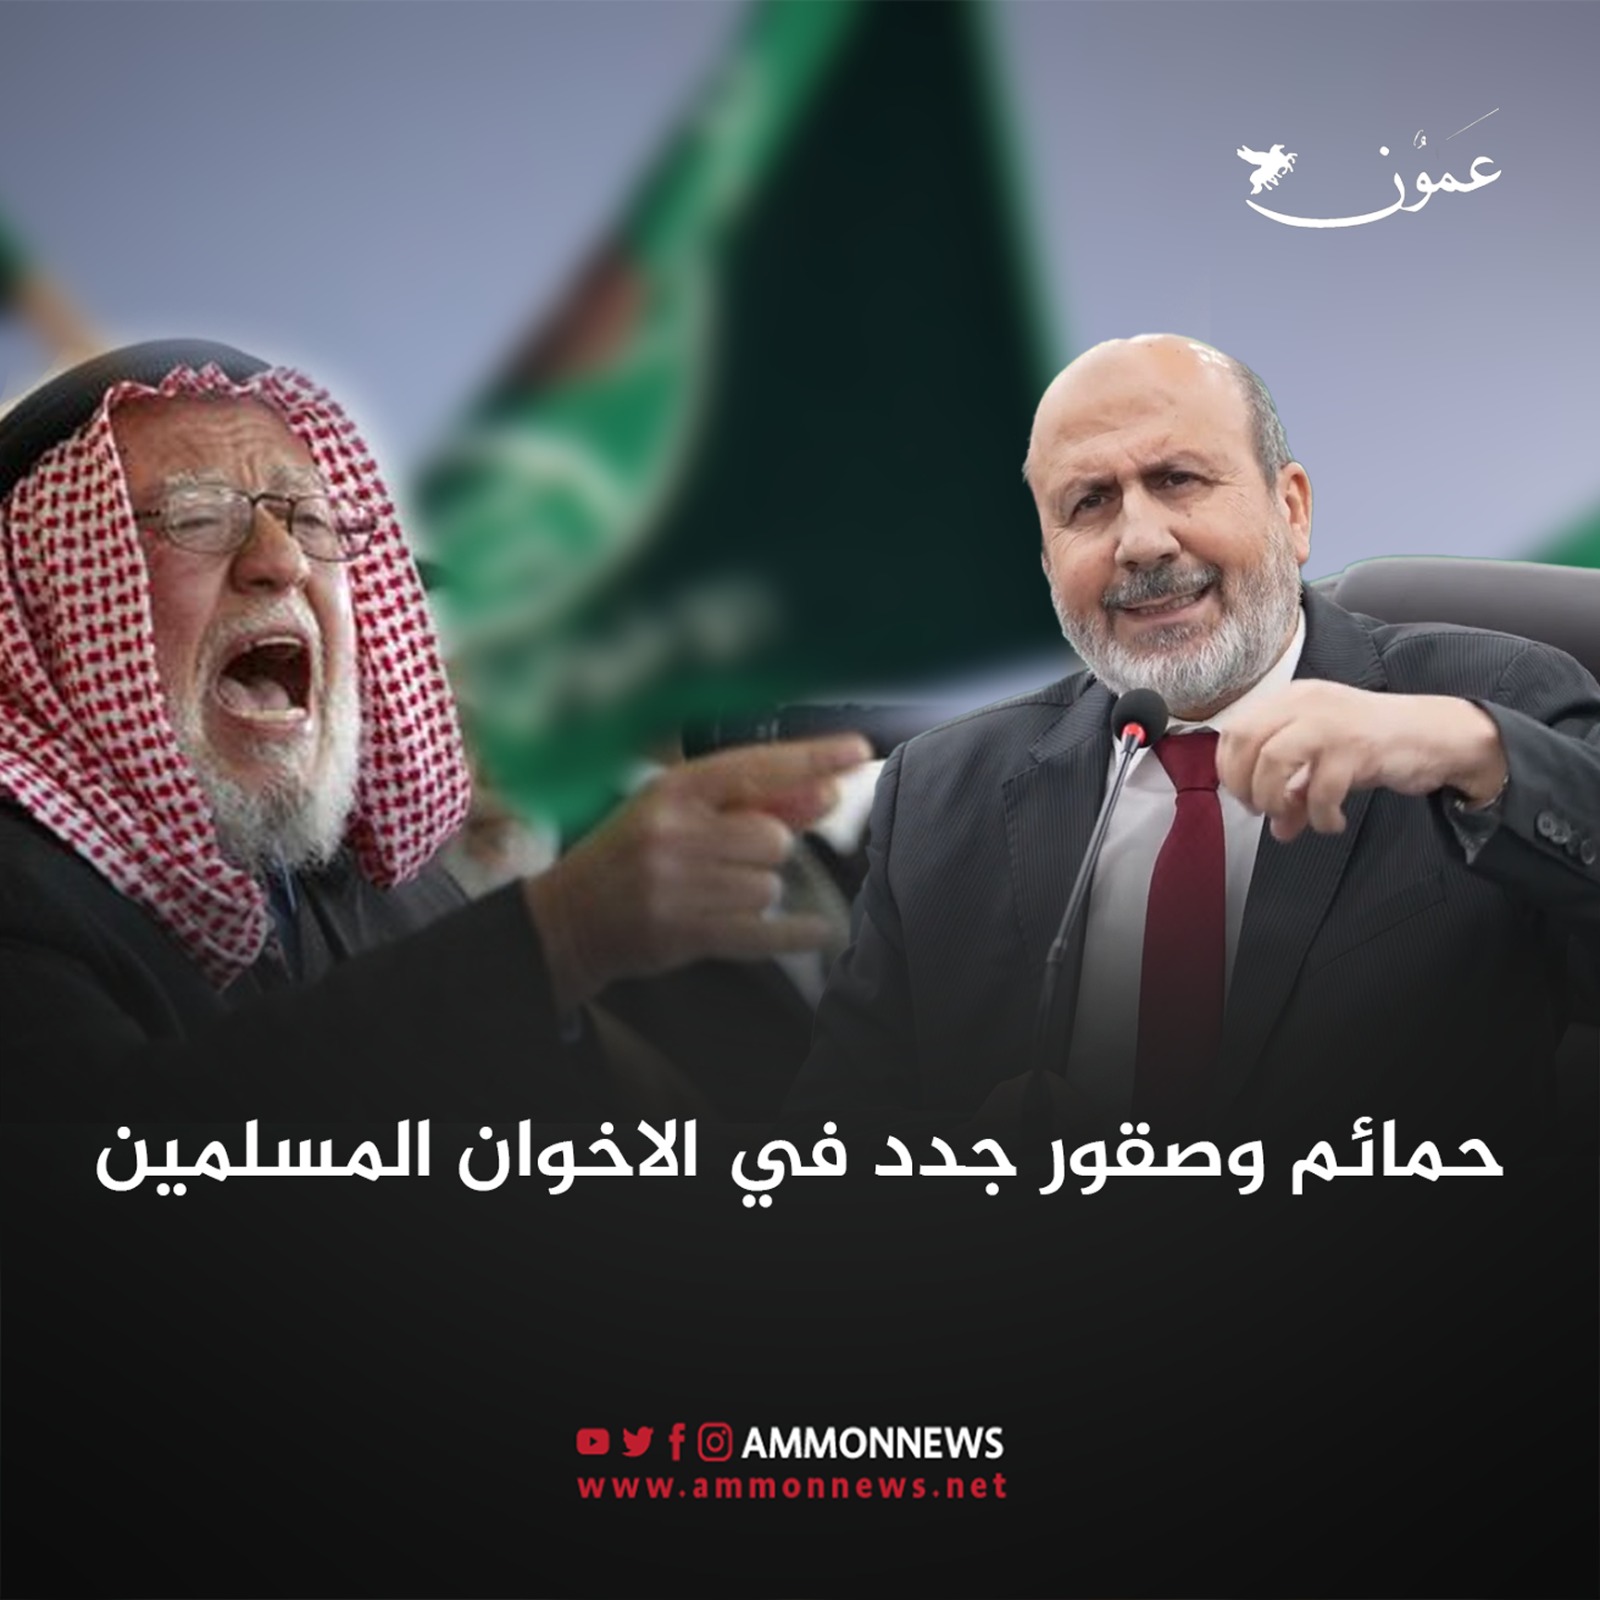 حمائم وصقور جدد في الإخوان المسلمين بالأردن